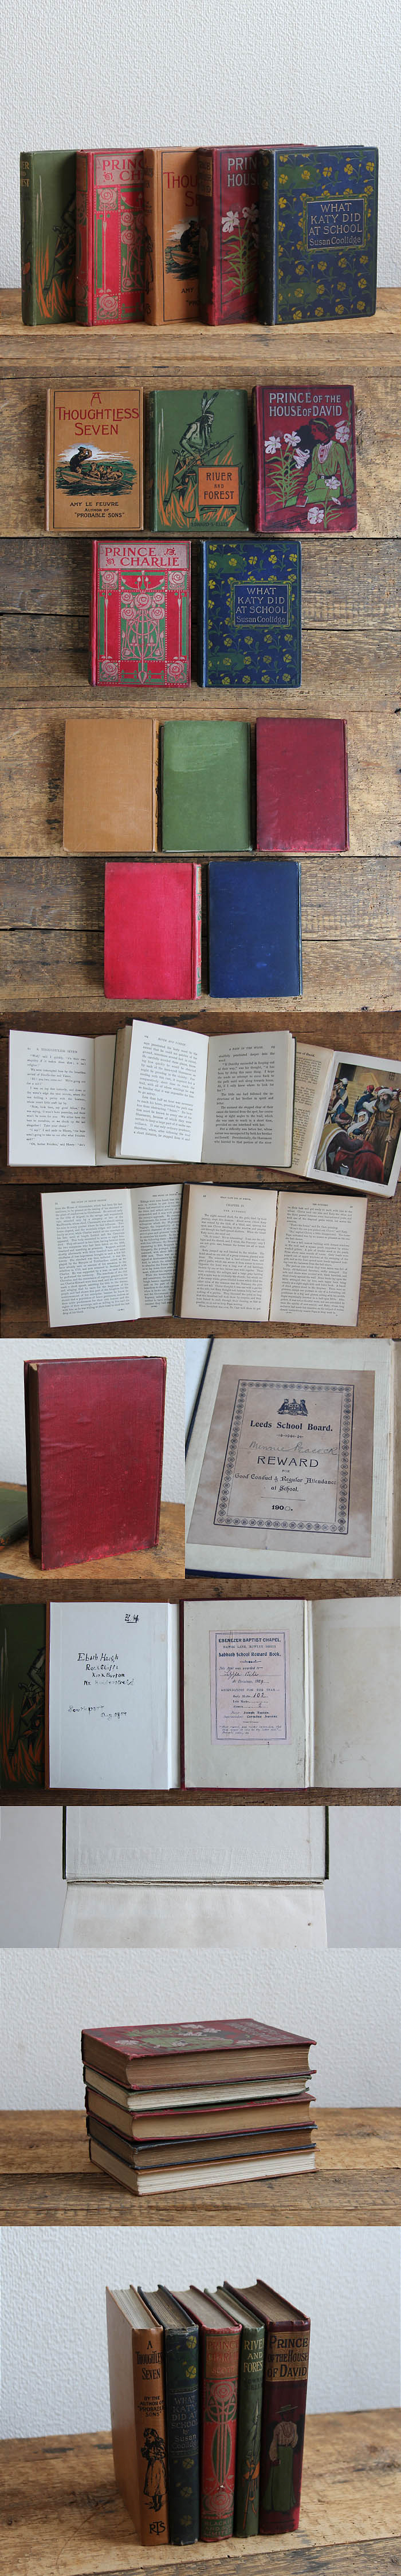 イギリス アンティークブック 5冊セット 古書 インテリア雑貨 洋書 ディスプレイ「雰囲気パーフェクト」V-930